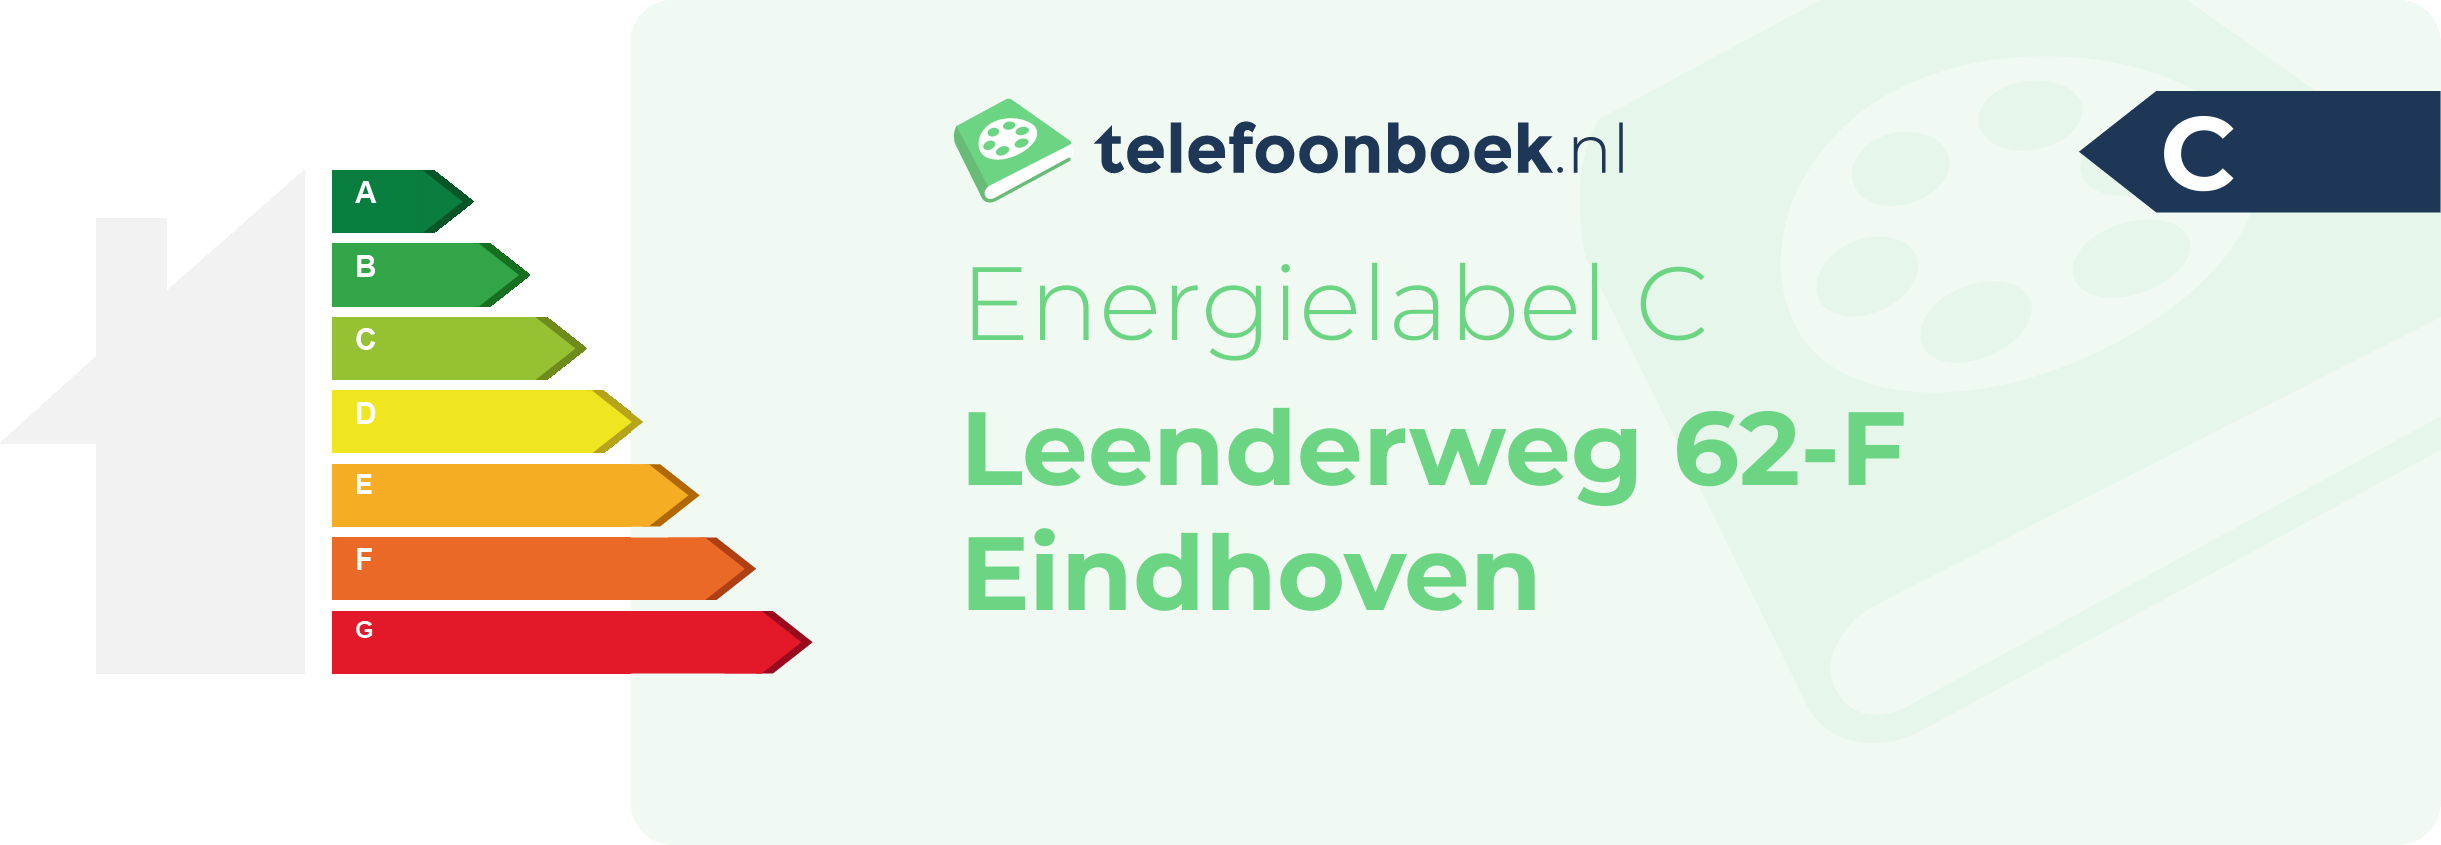 Energielabel Leenderweg 62-F Eindhoven